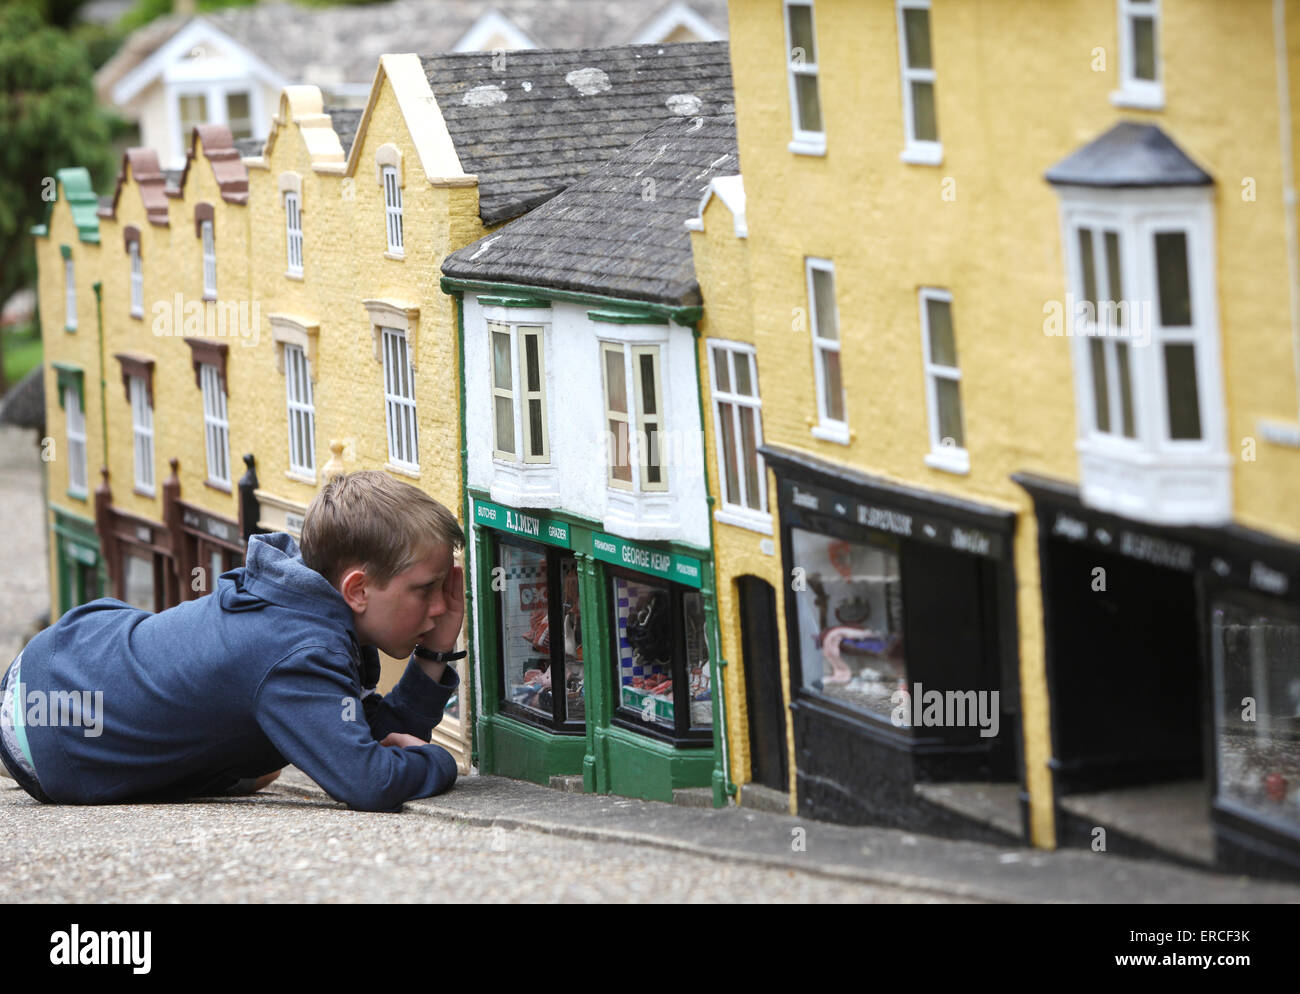 Un niño se ve como un gigante como él mira a través de una ventana de la tienda durante una visita a la aldea modelo en Godshill en la Isla de Wight Foto de stock